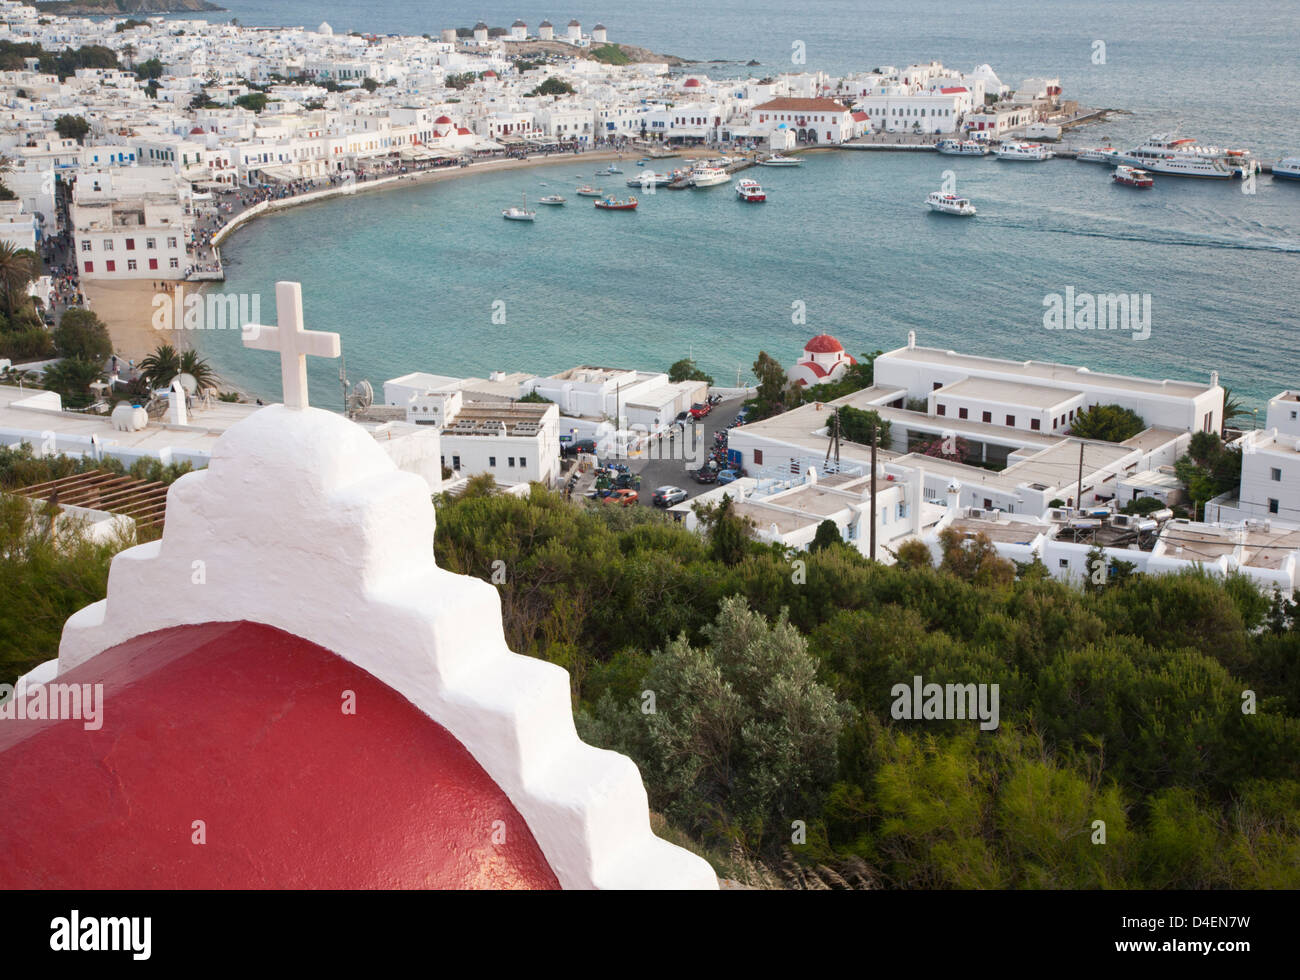 Église en dôme rouge avec croix blanche surplombant le port de Mykonos et la ville de Chora dans les îles grecques Banque D'Images